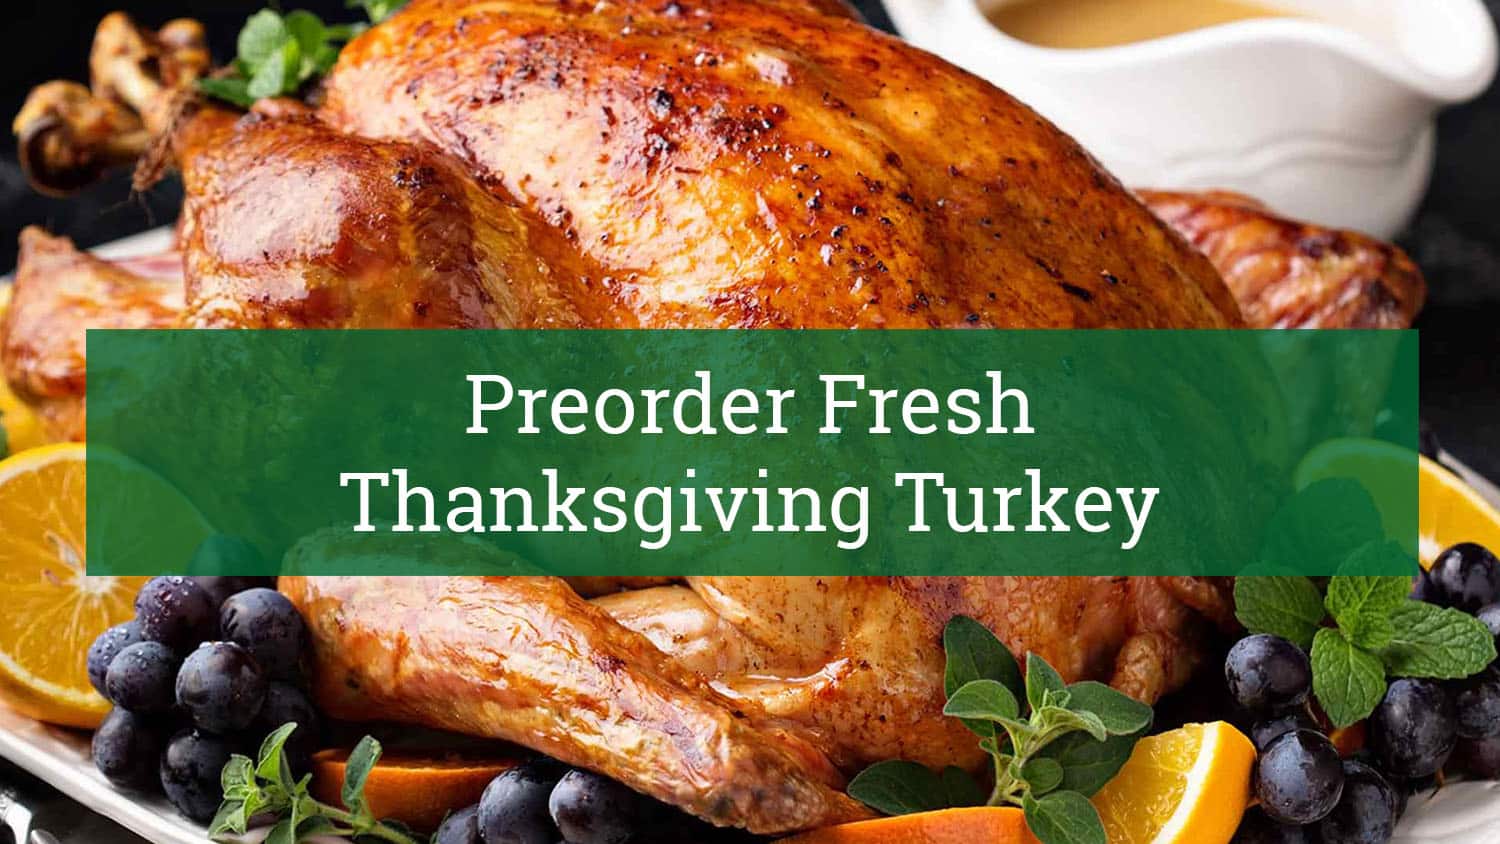 Preorder Fresh Thanksgiving Turkey